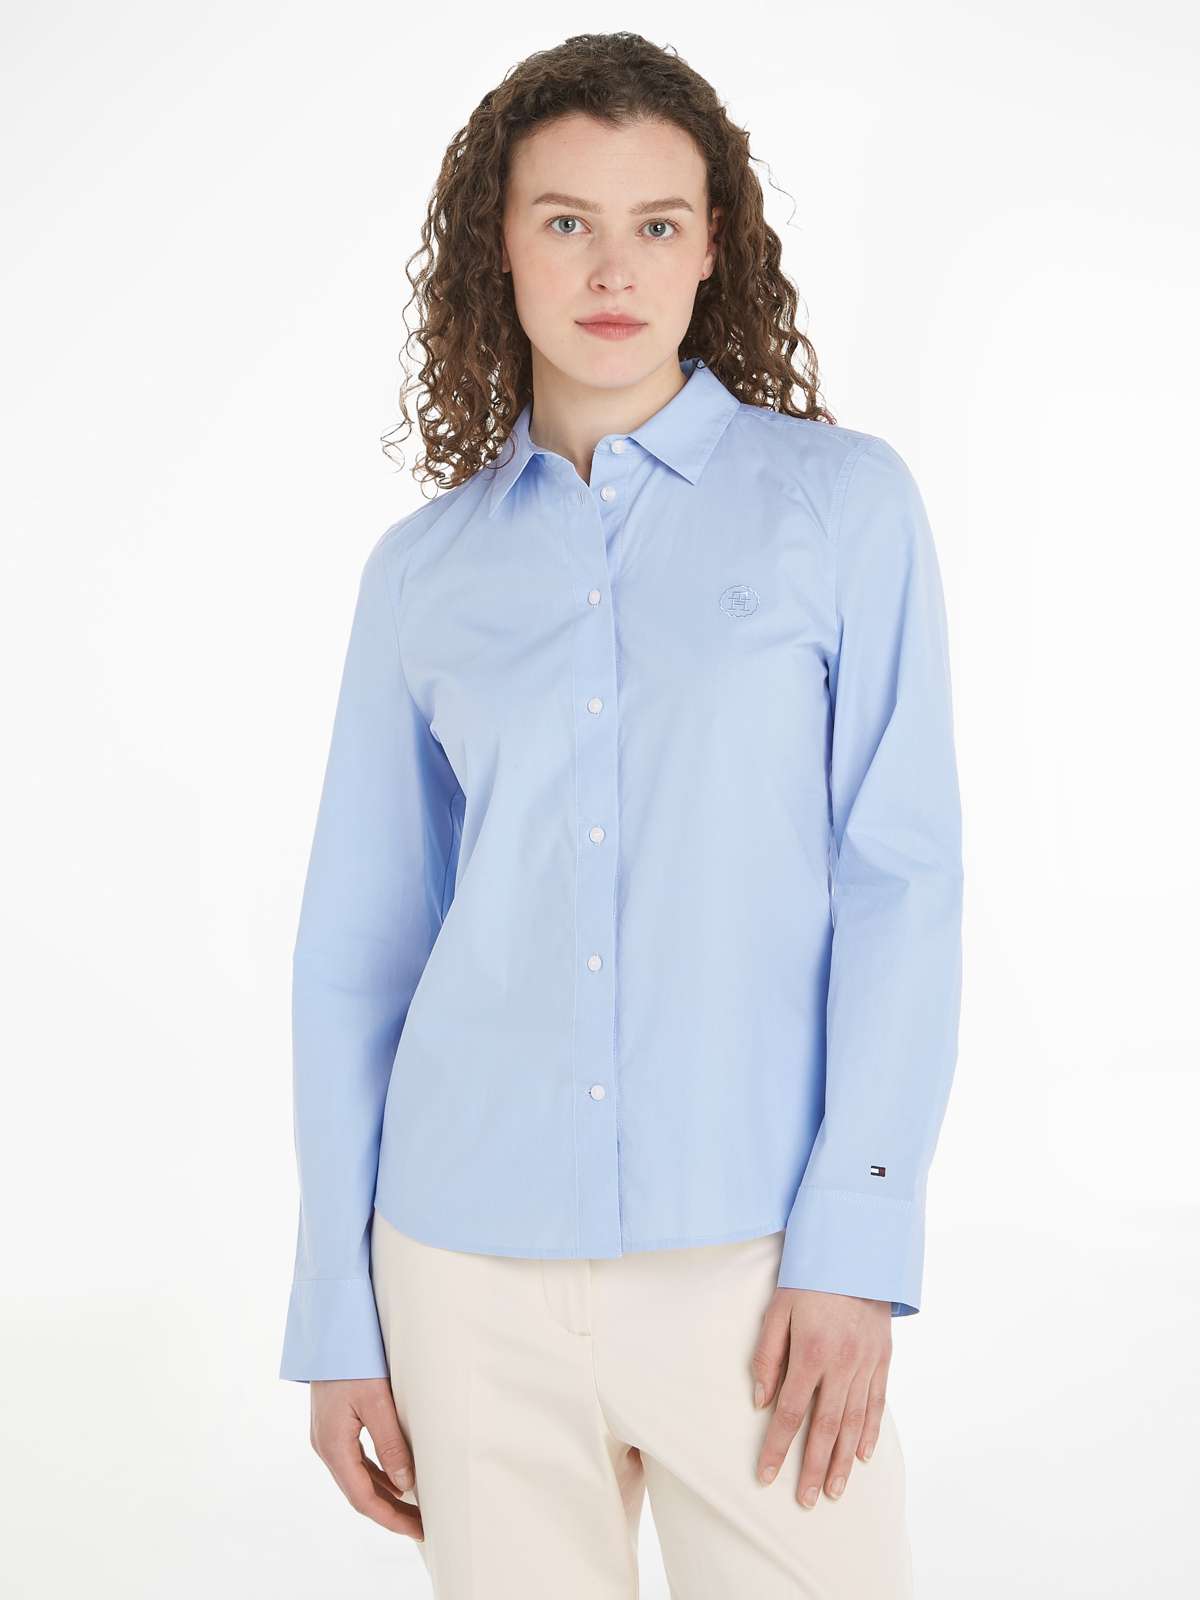 Классическая блузка с вышитым логотипом